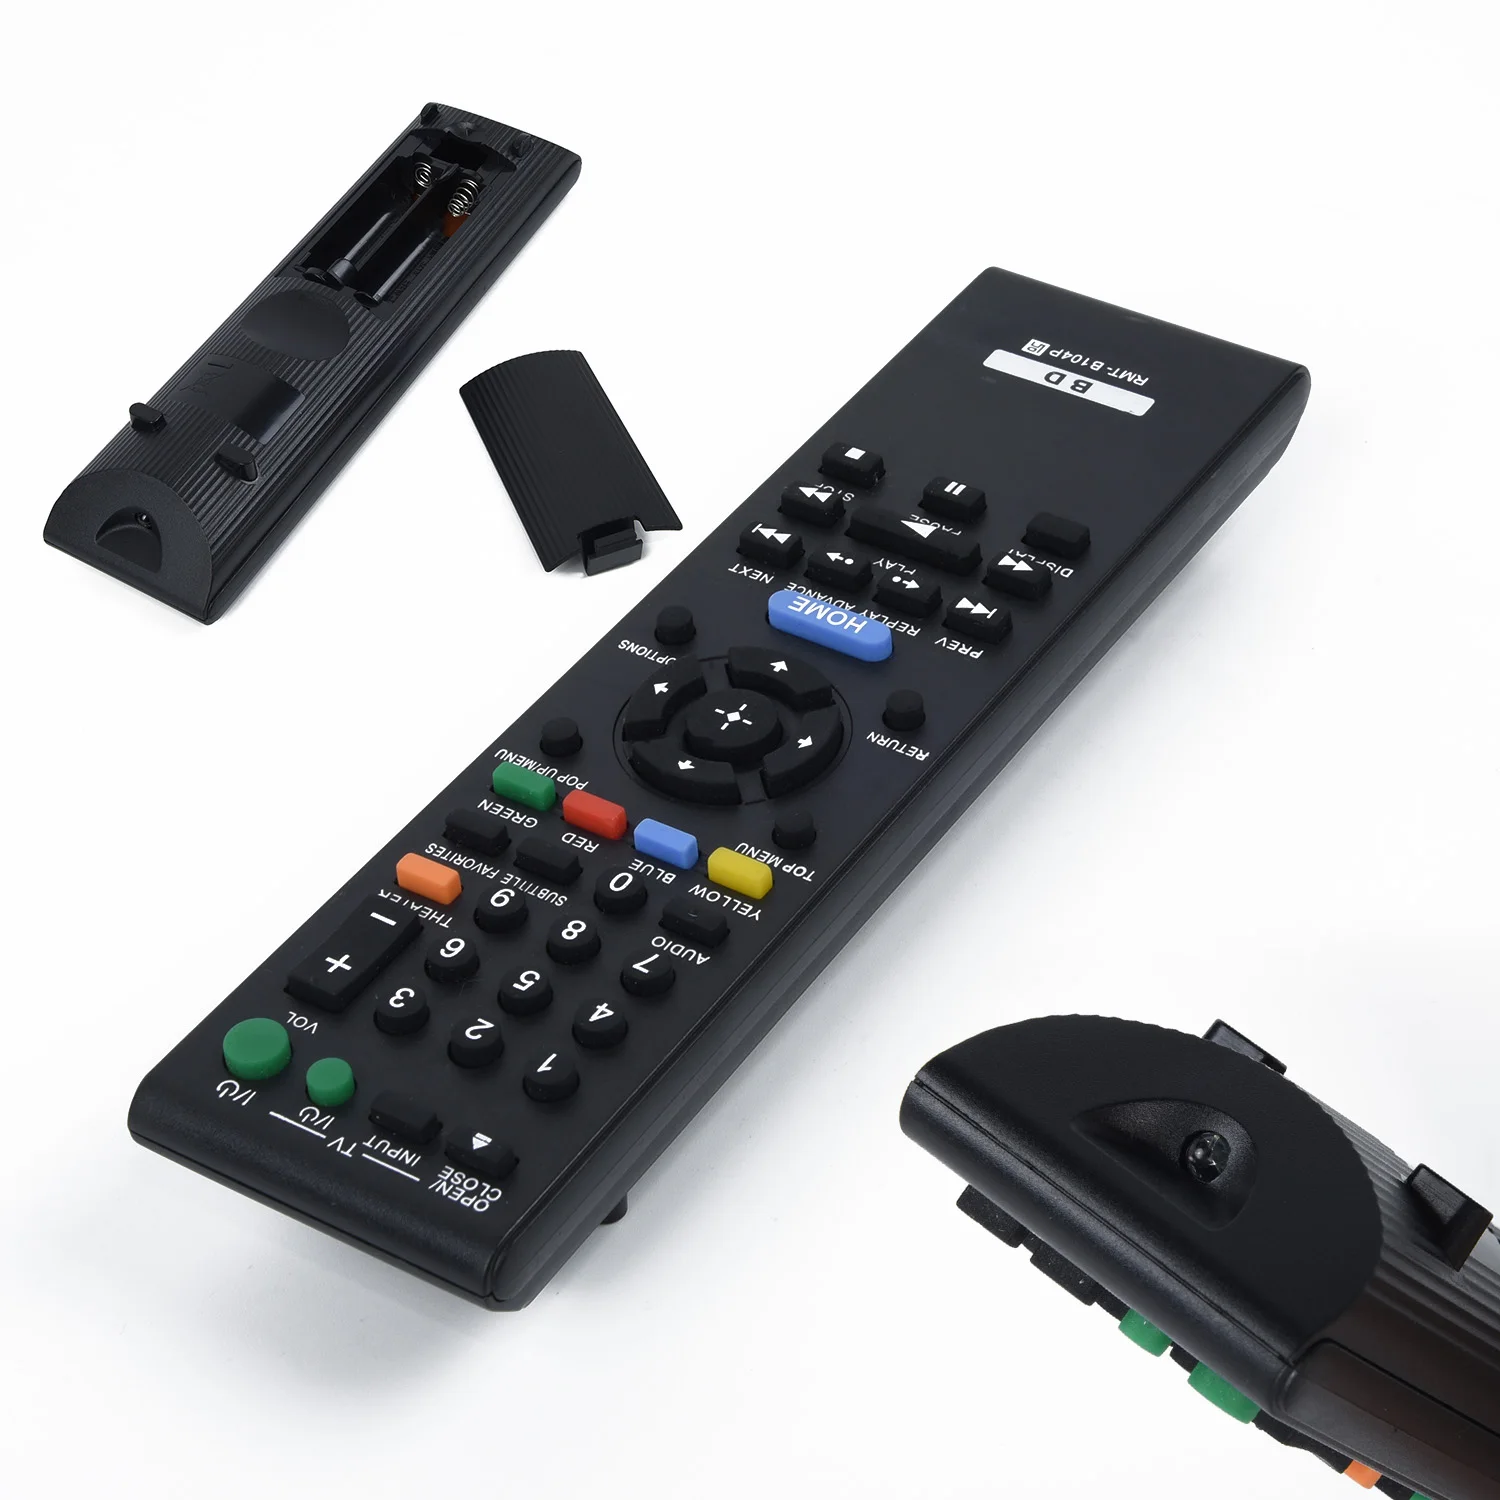 

Durable Remote Control For Sony BDP-S185 BDP-S380 BDP-S350 BDP-S550 S560 Blu-ray Player